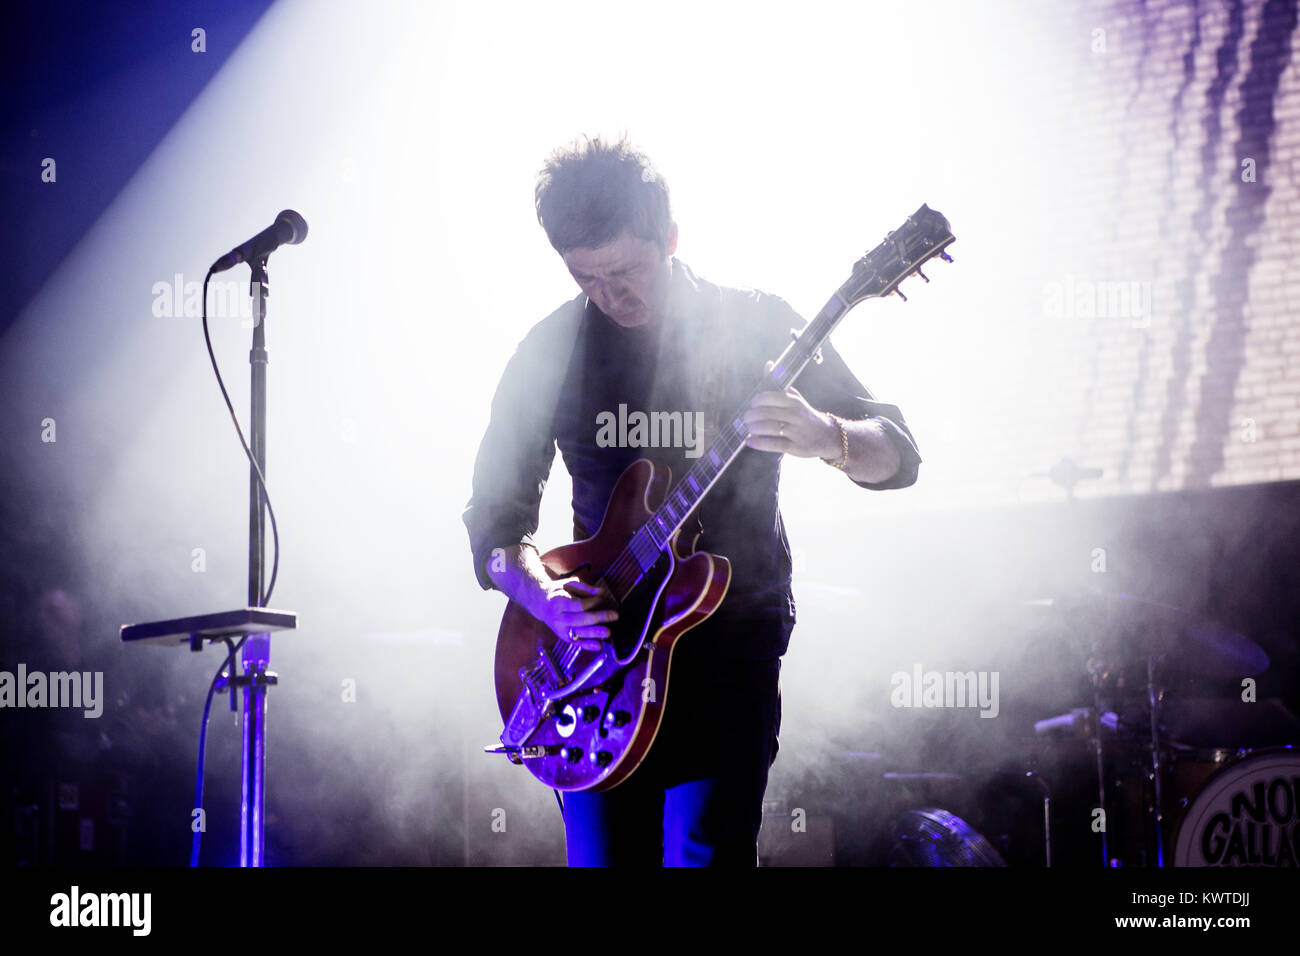 Il musicista inglese, cantante e cantautore Noel Gallagher esegue un concerto dal vivo a VEGA a Copenaghen sotto il nome di Noel Gallagher di alta uccelli in volo. Danimarca, 17/03 2015. Foto Stock